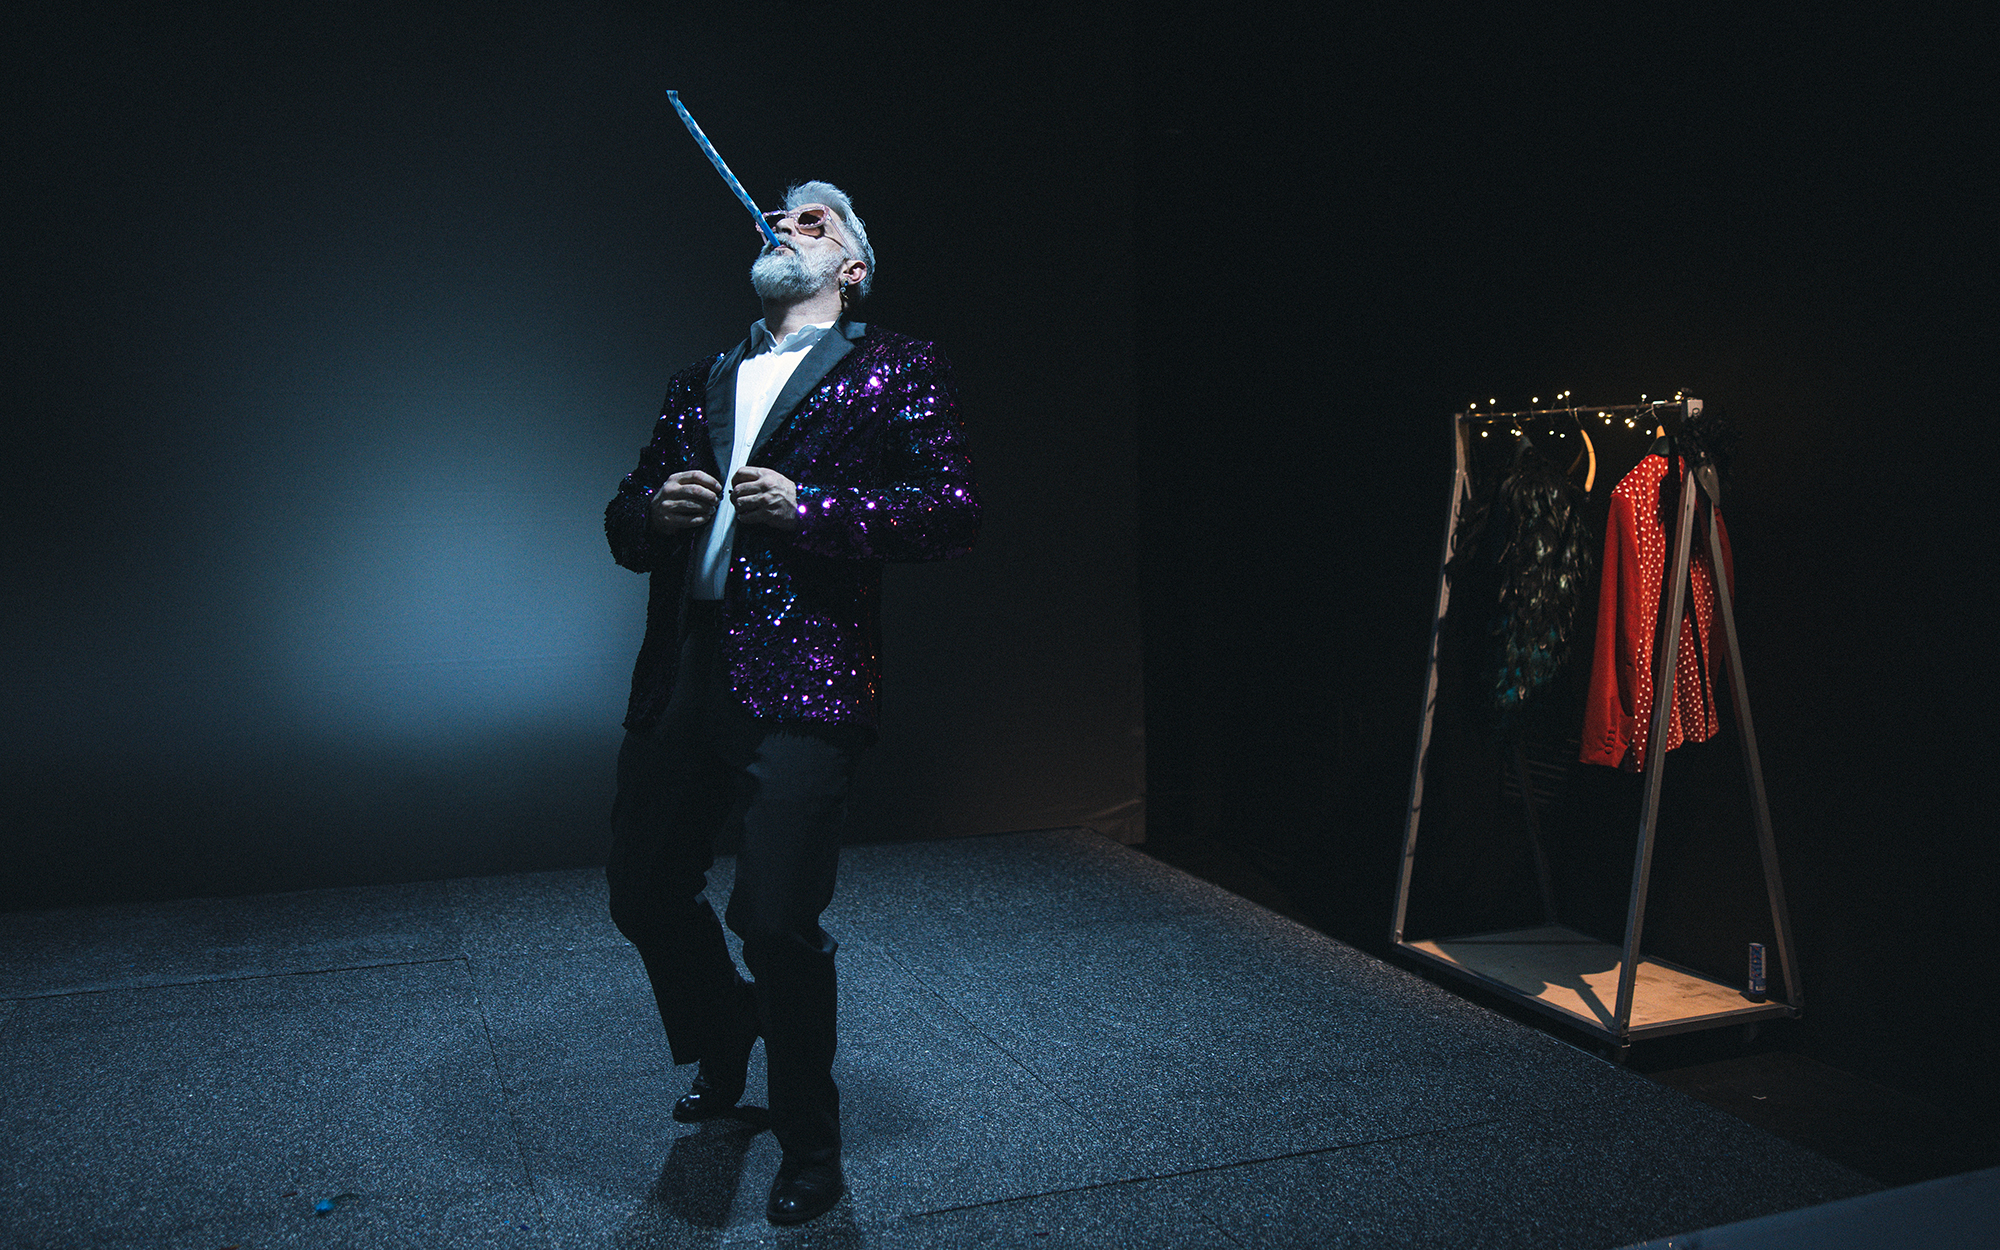 On (Sebastian Cavazza) v plesnem koraku piha v papirnato piščal, ki jo uporabljamo ob praznovanjih. Ob tem si zapenja bleščeč suknjič. Avtor fotografije: Peter Giodani.